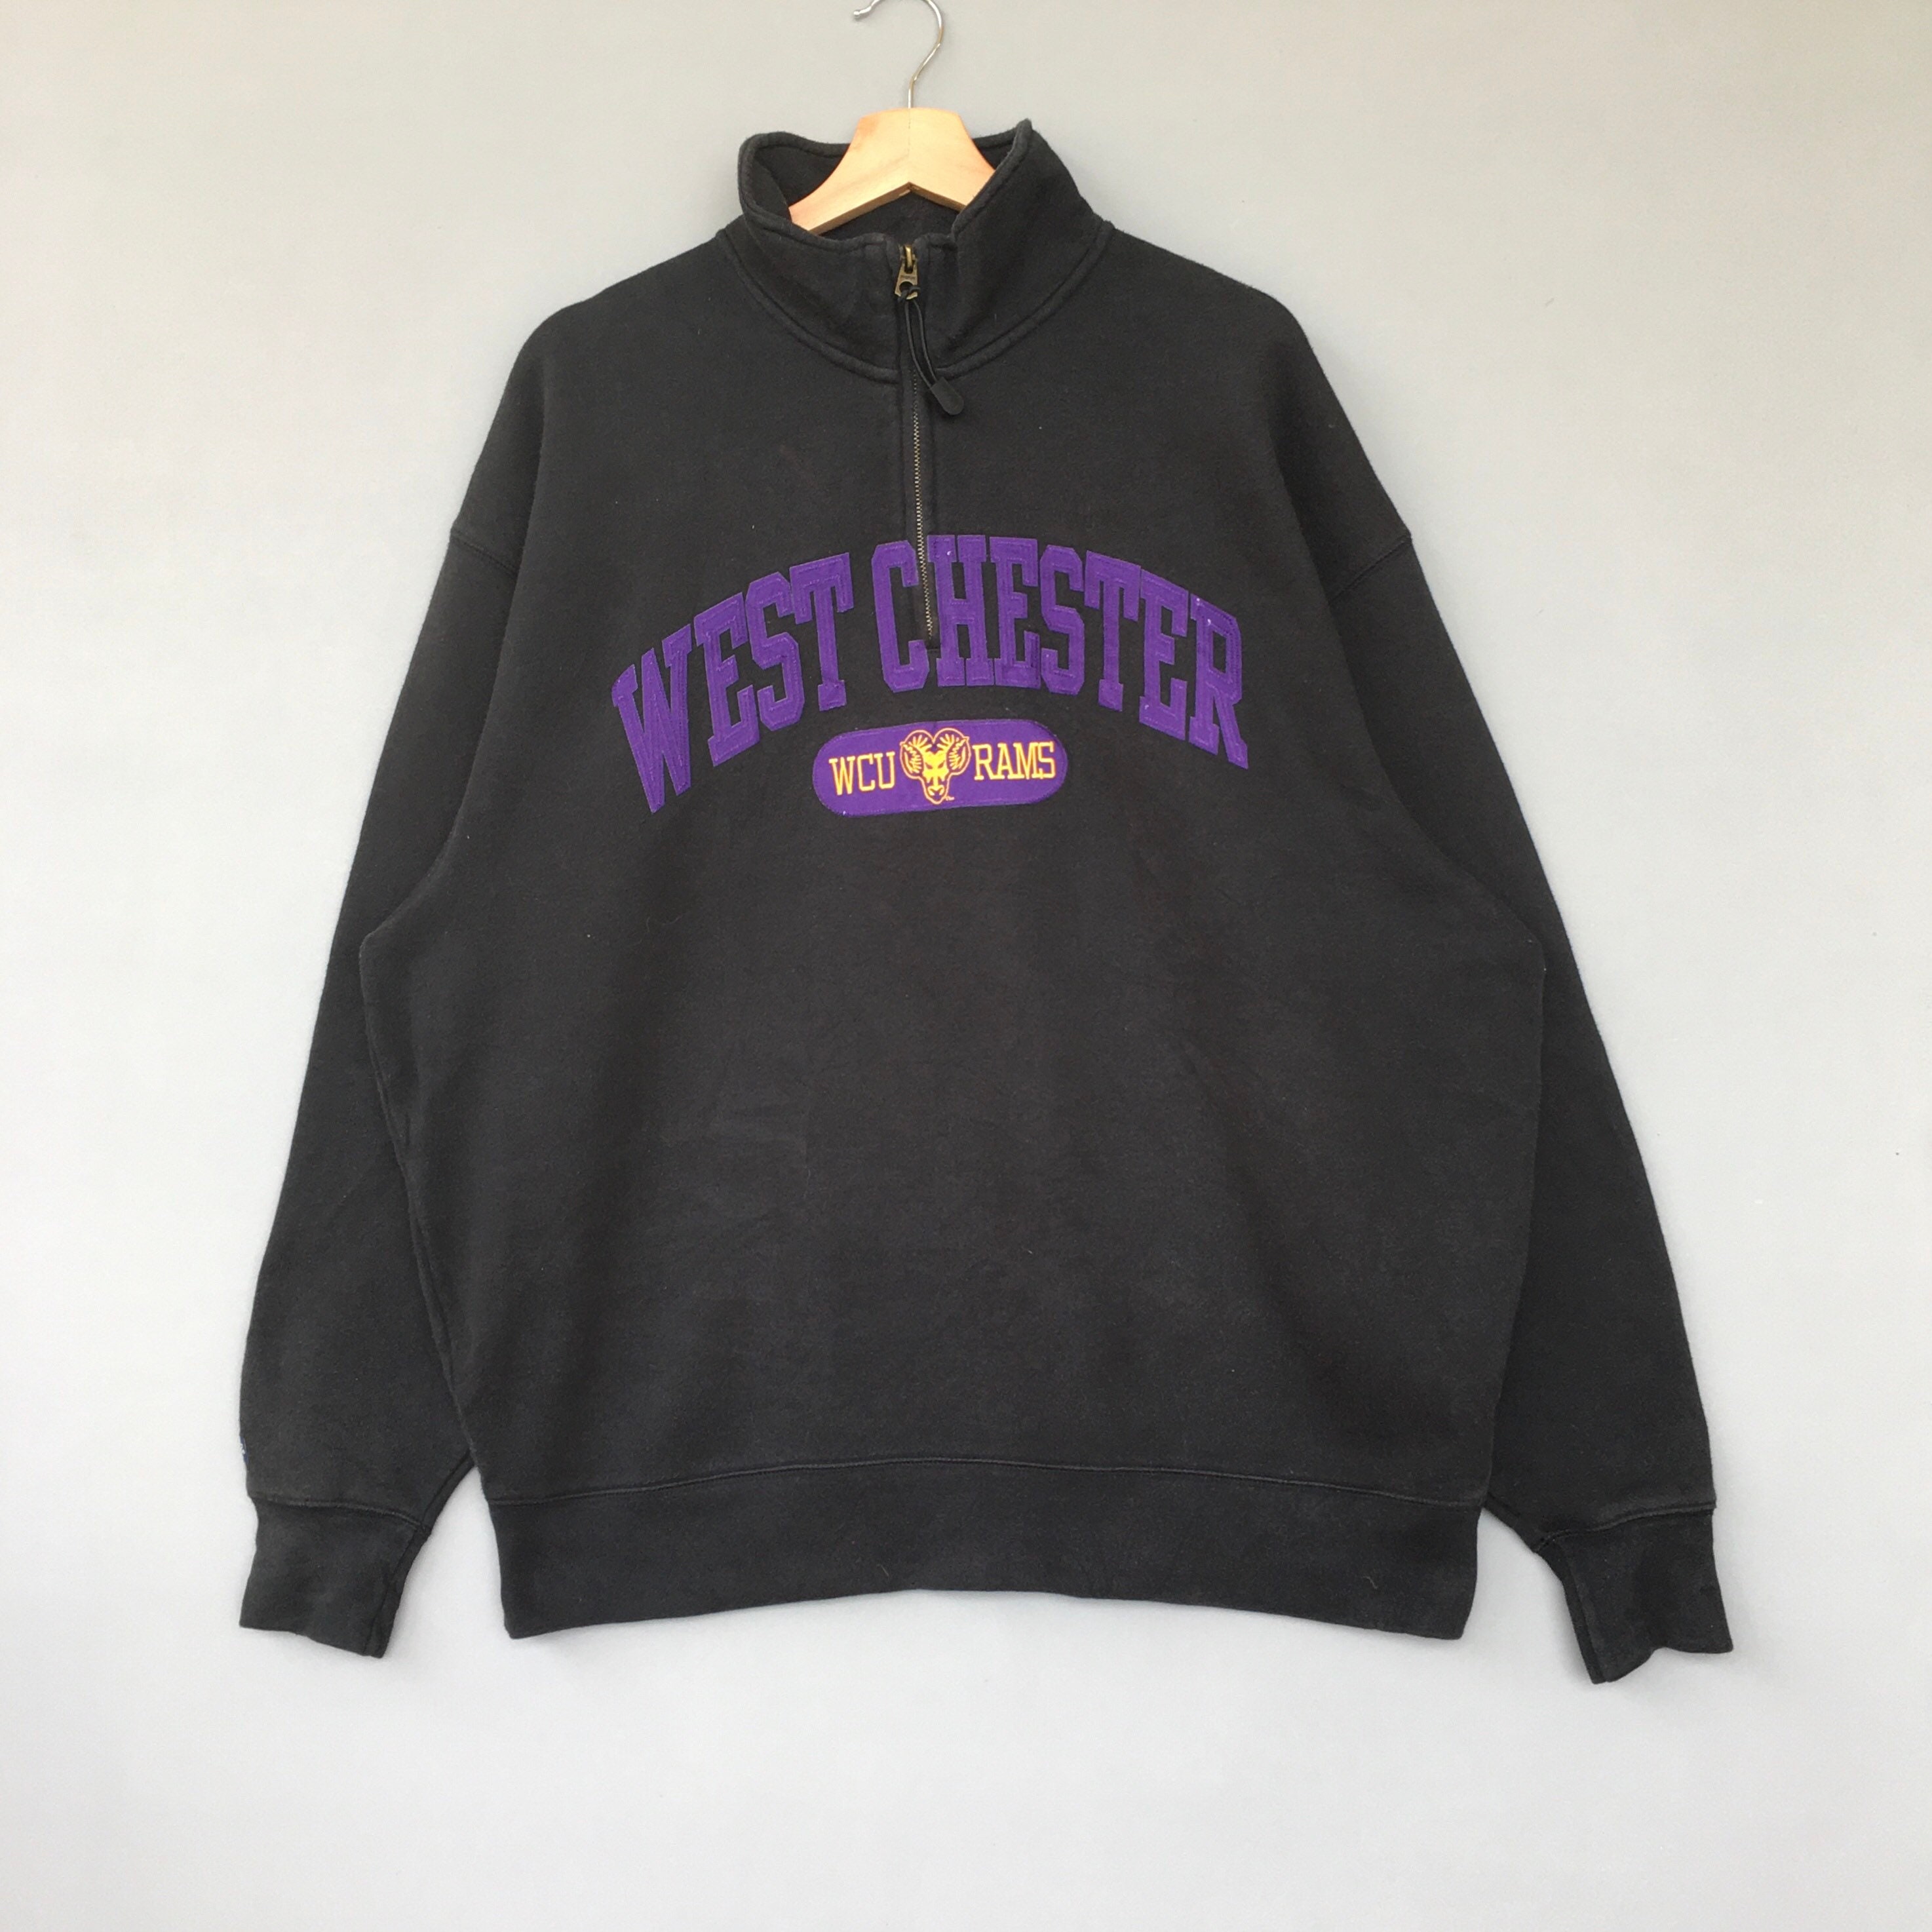 Rare Vintage Jansport West Chester University Sweatshirt Half Zip Pullover Jumper/Wcu Golden Rams Sweatshirt